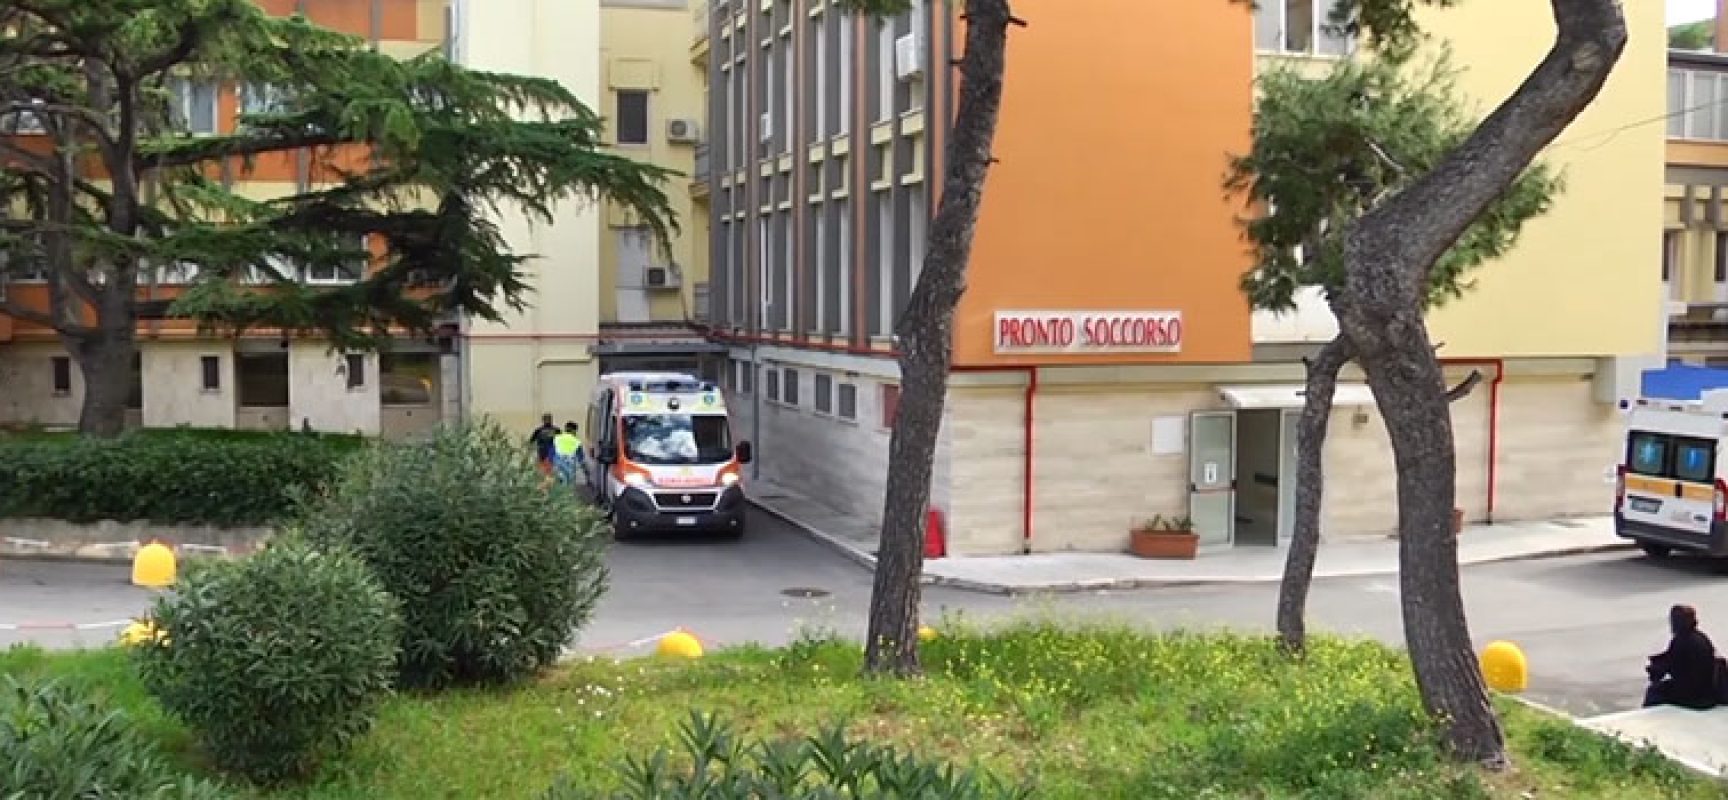 Di Bari: interrogazione urgente su carenza medici Pronto Soccorso Bat, nella lista anche ospedale Bisceglie